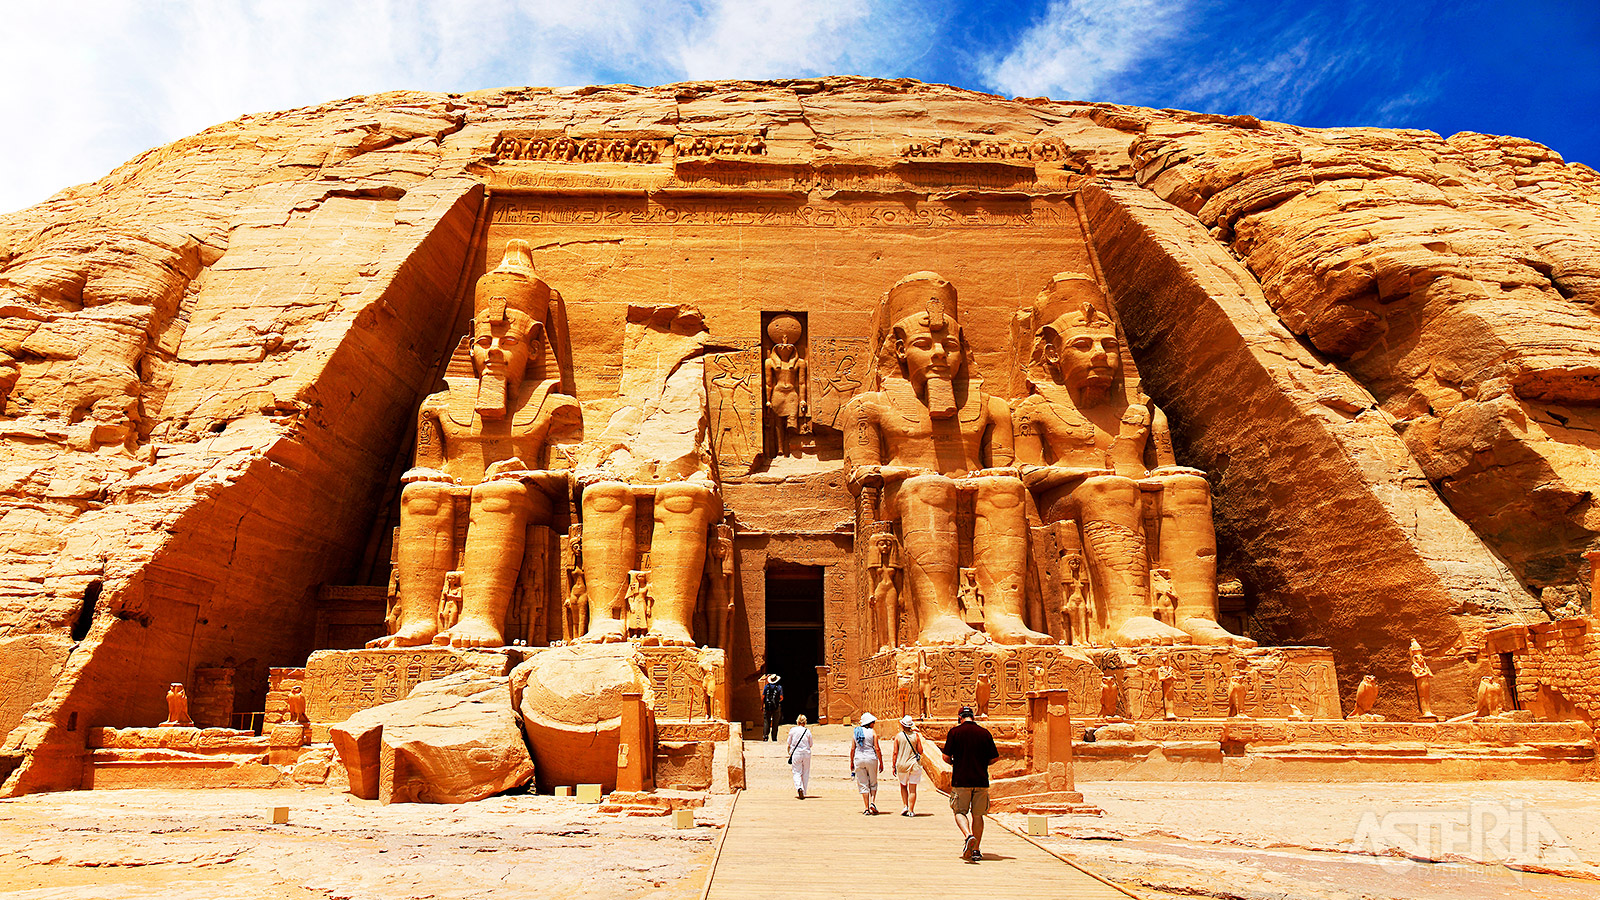 De tempel van Abu Simbel (Unesco) is één van de mooiste en meest complete tempels van Egypte